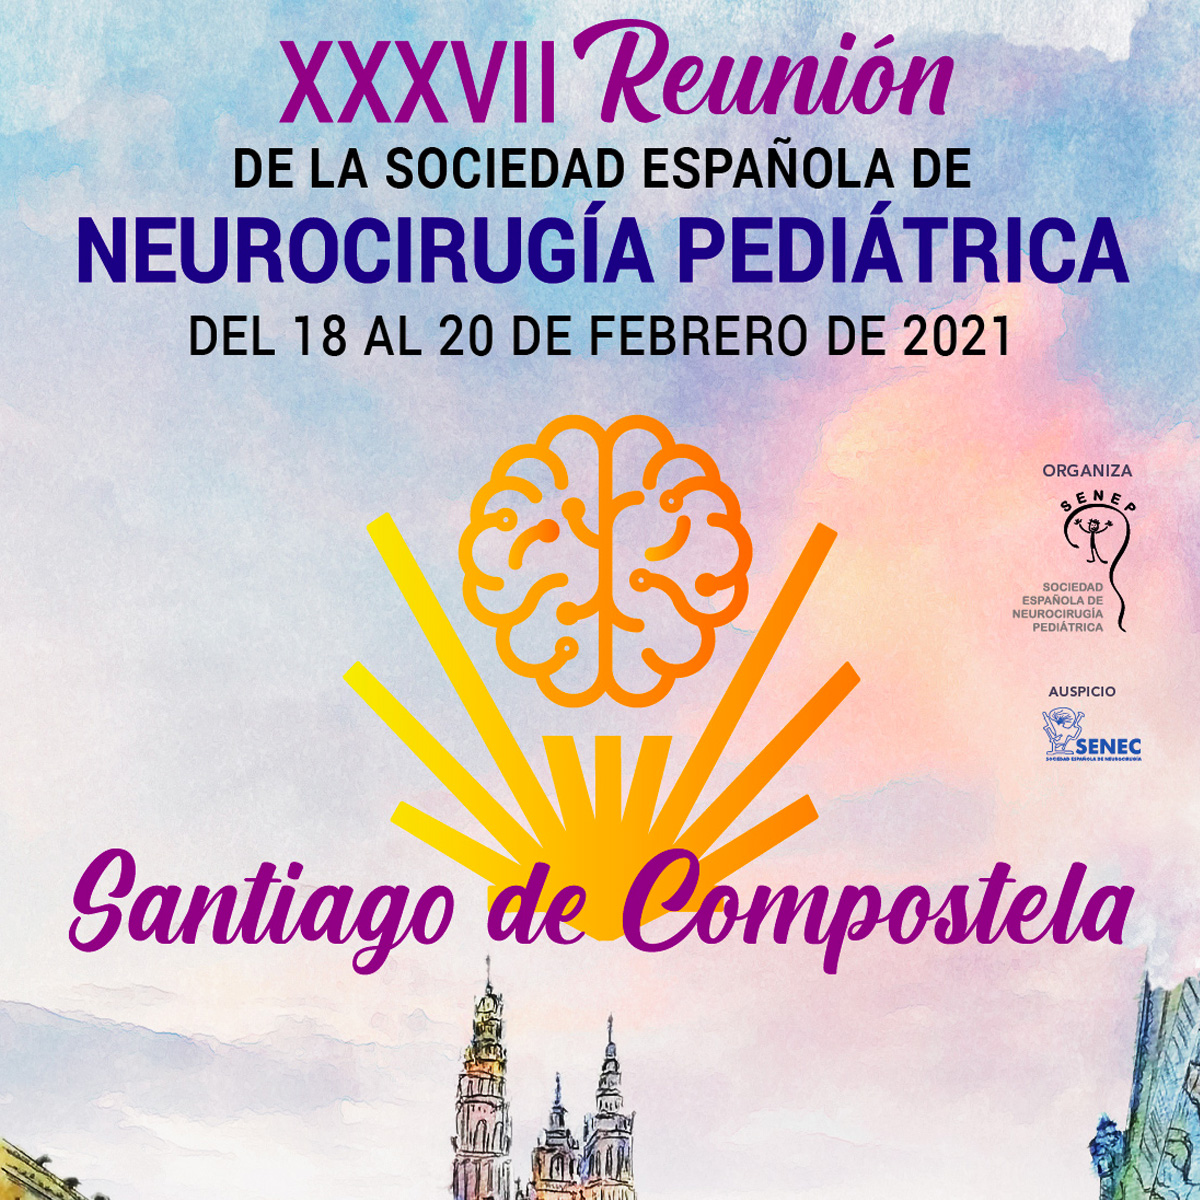 XXXVII Congreso de la Sociedad Española de Neurocirugía Pediátrica